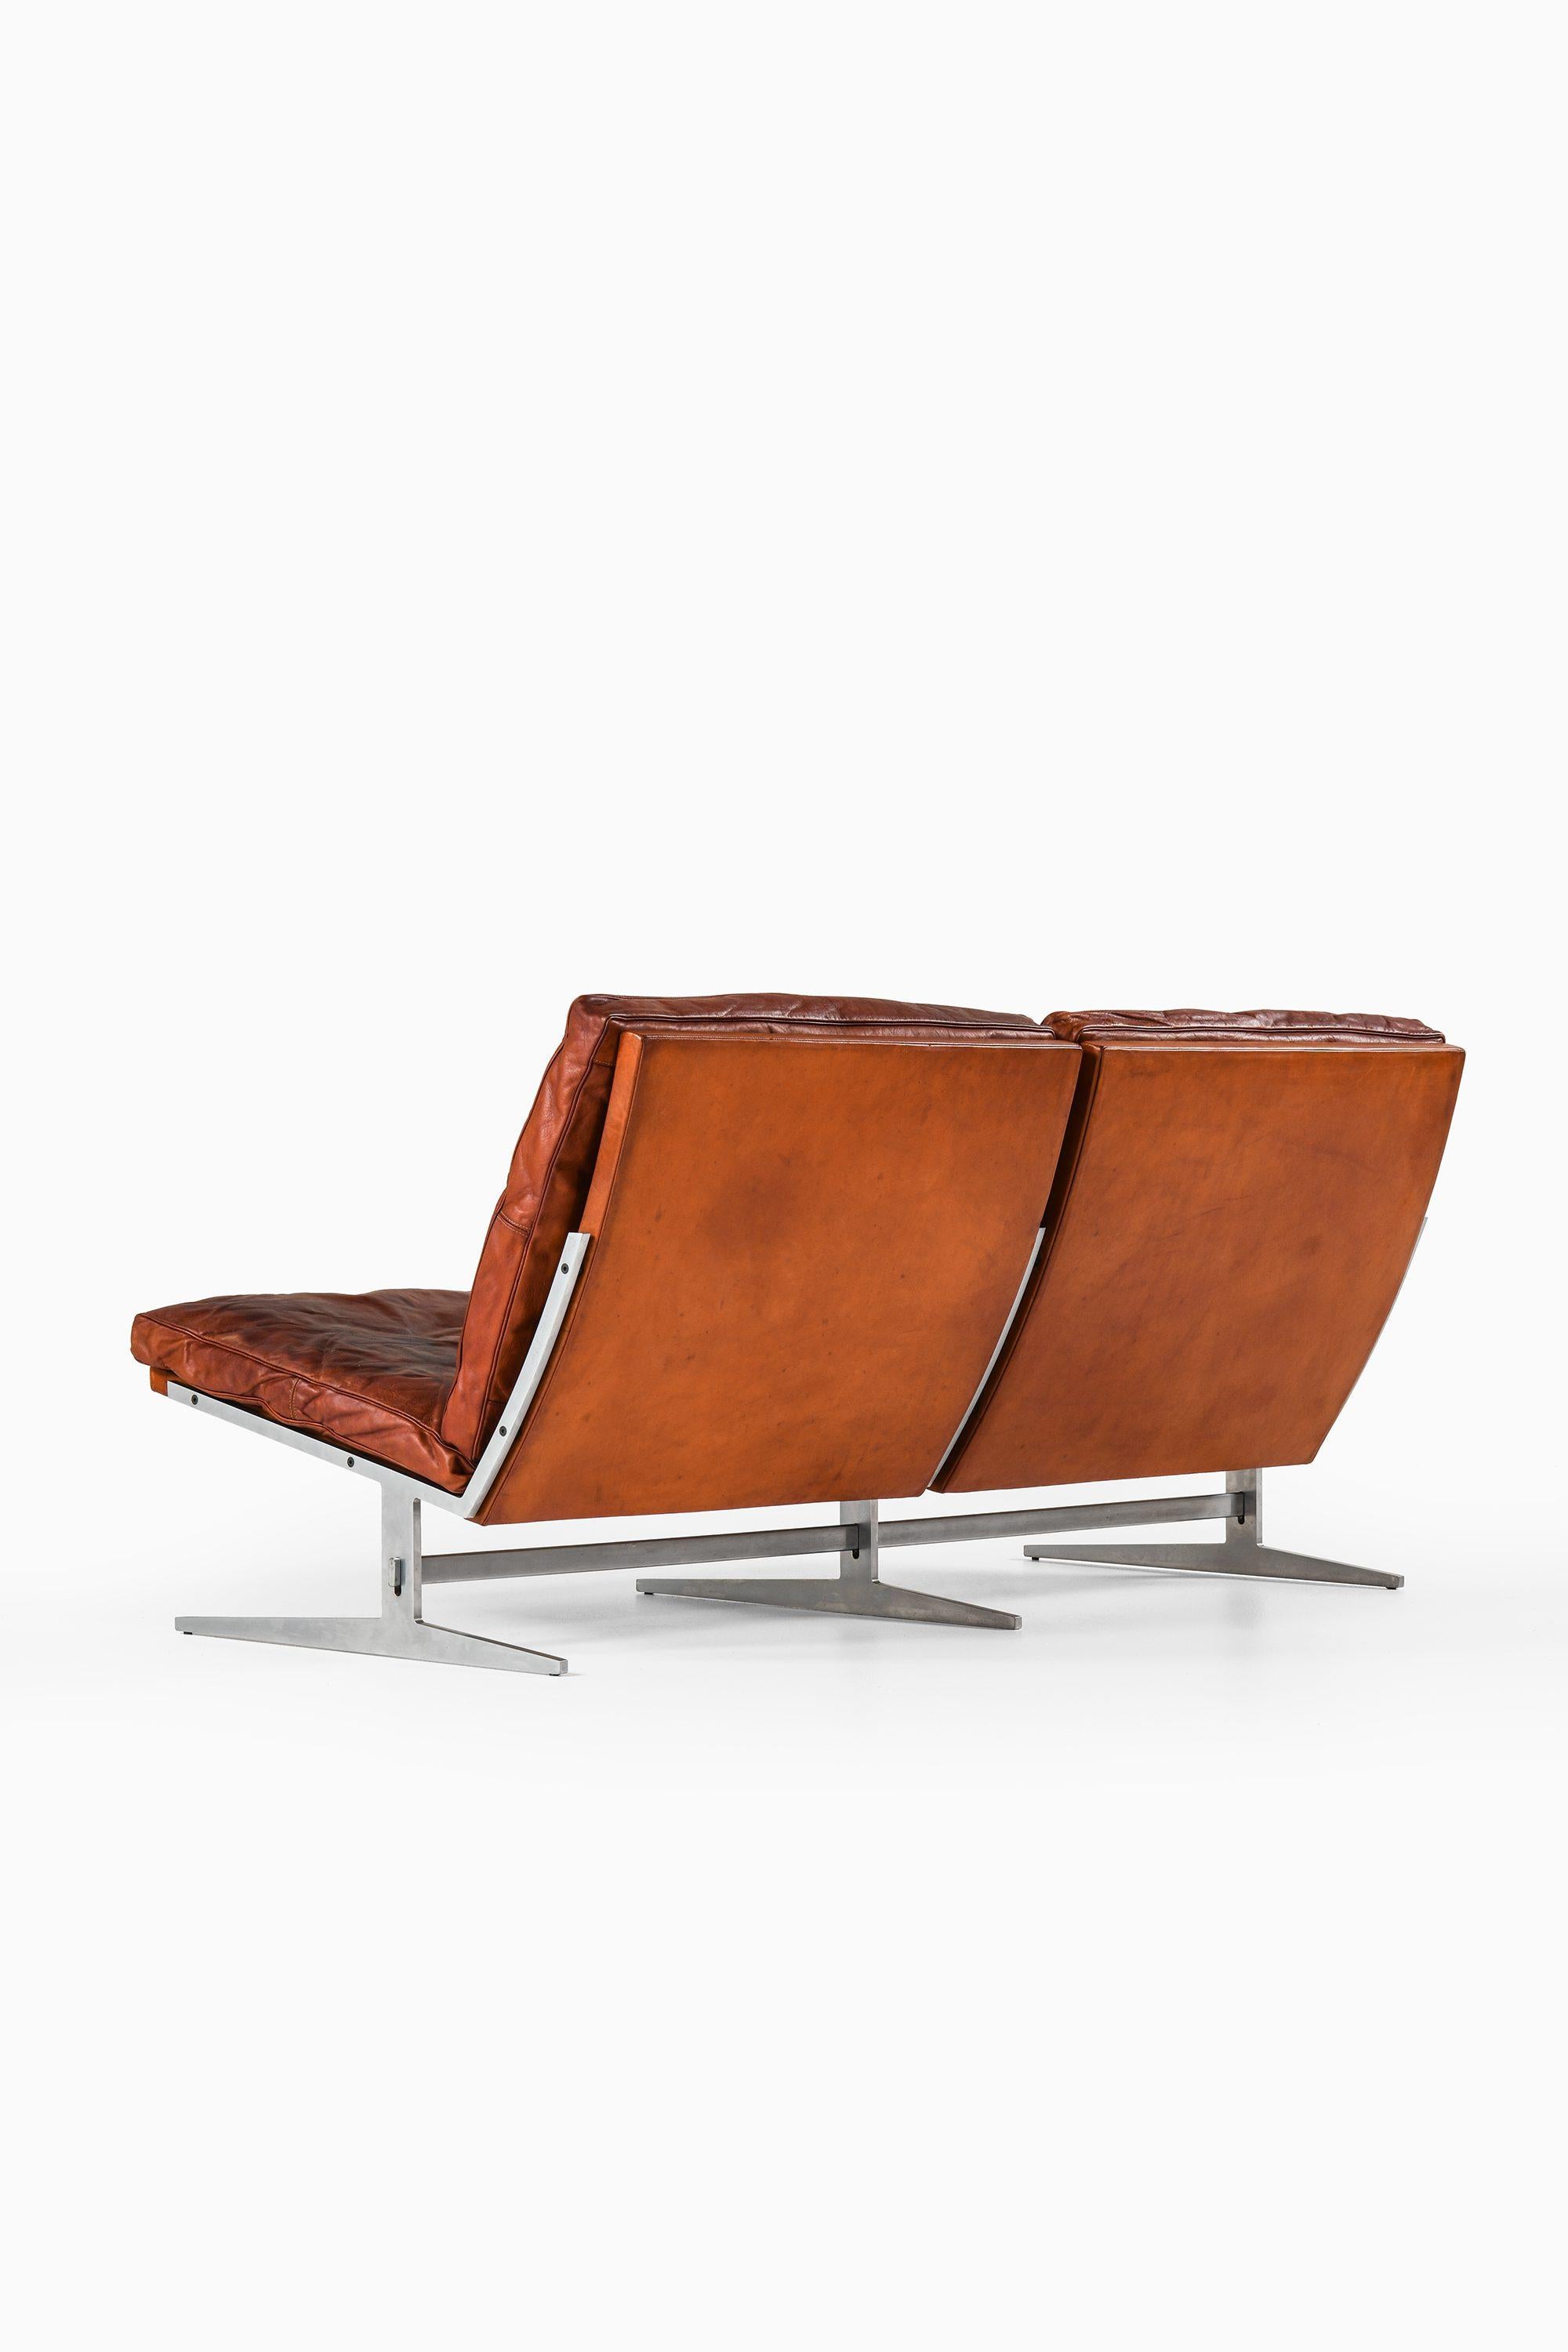 Zweisitziges Sofa aus Stahl und Leder von Jørgen Kastholm & Preben Fabricius, 1960er Jahre (Dänisch)